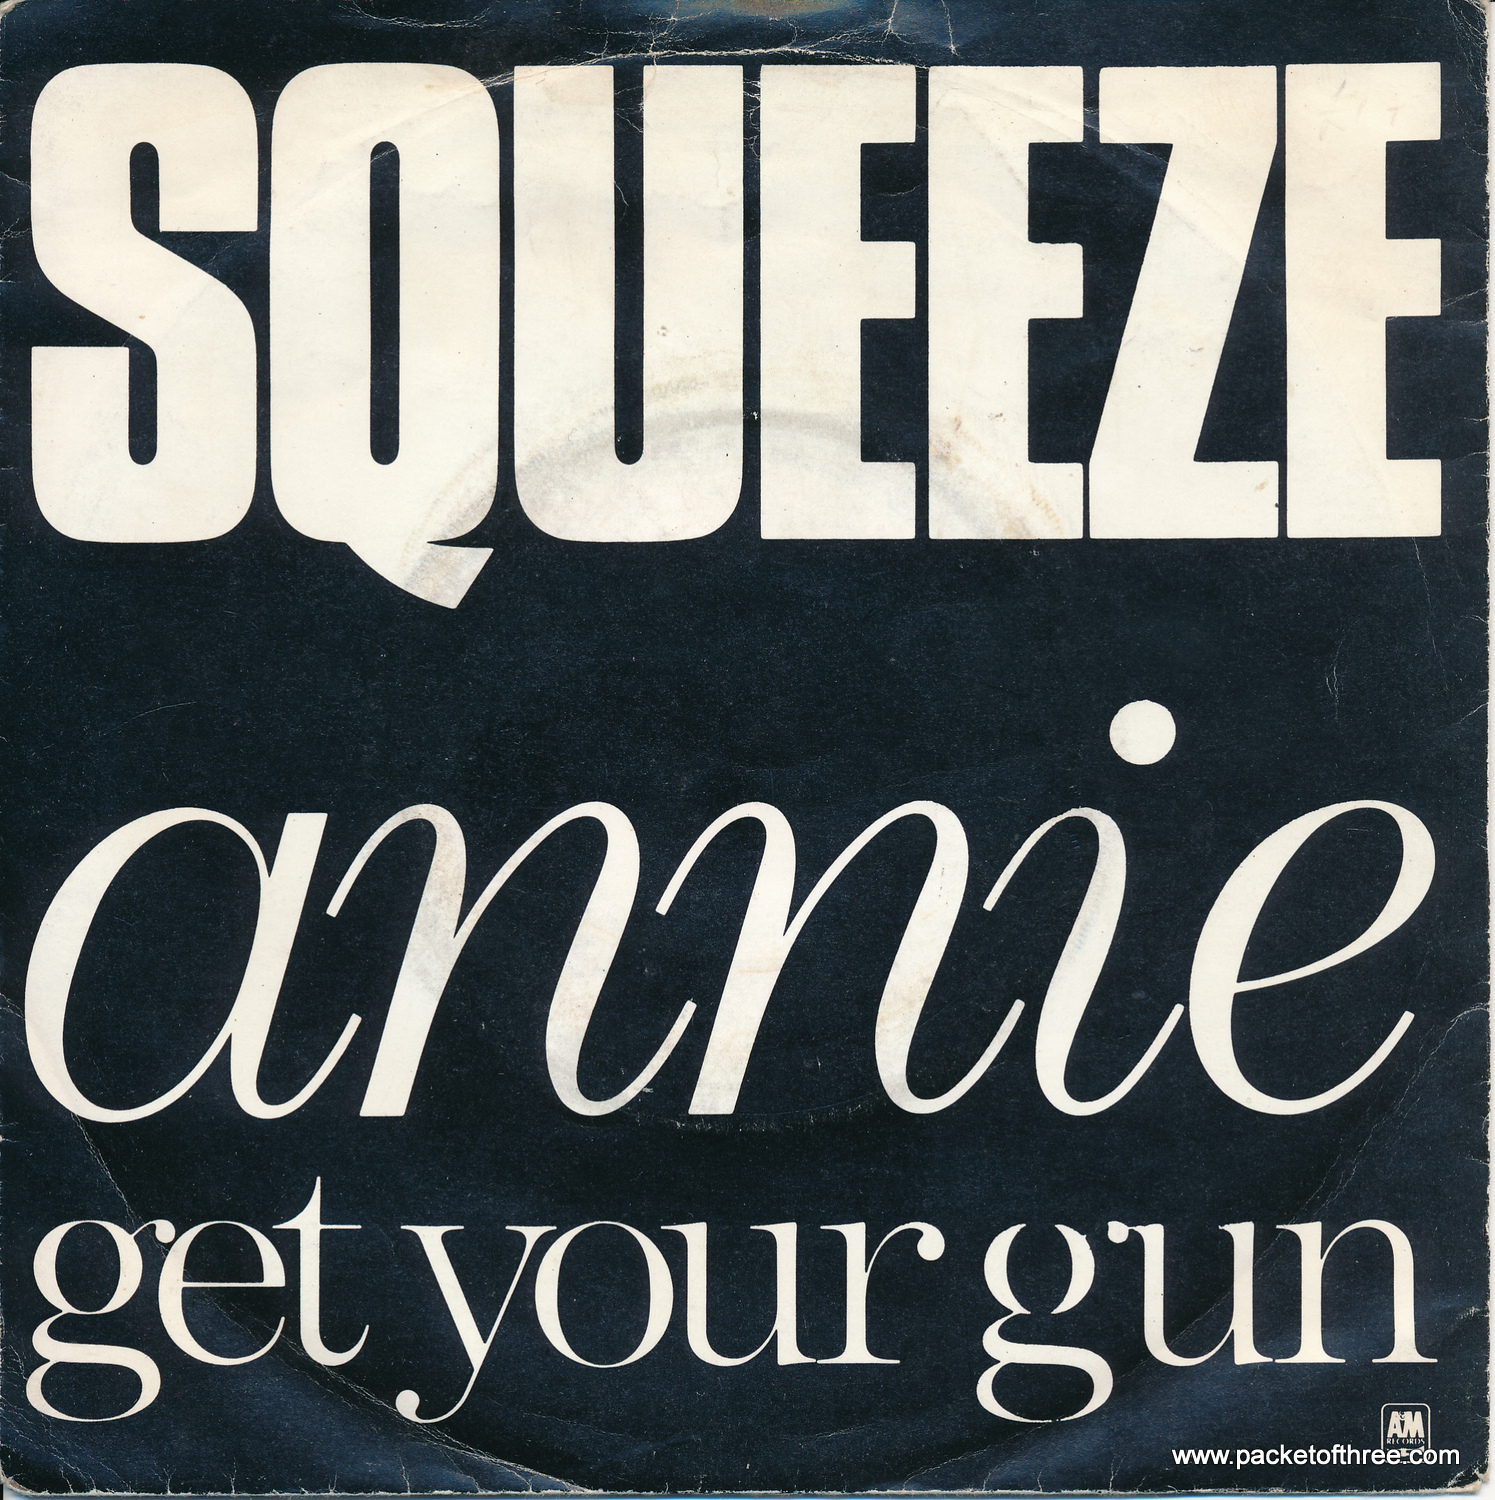 Annie Get Your Gun UK single